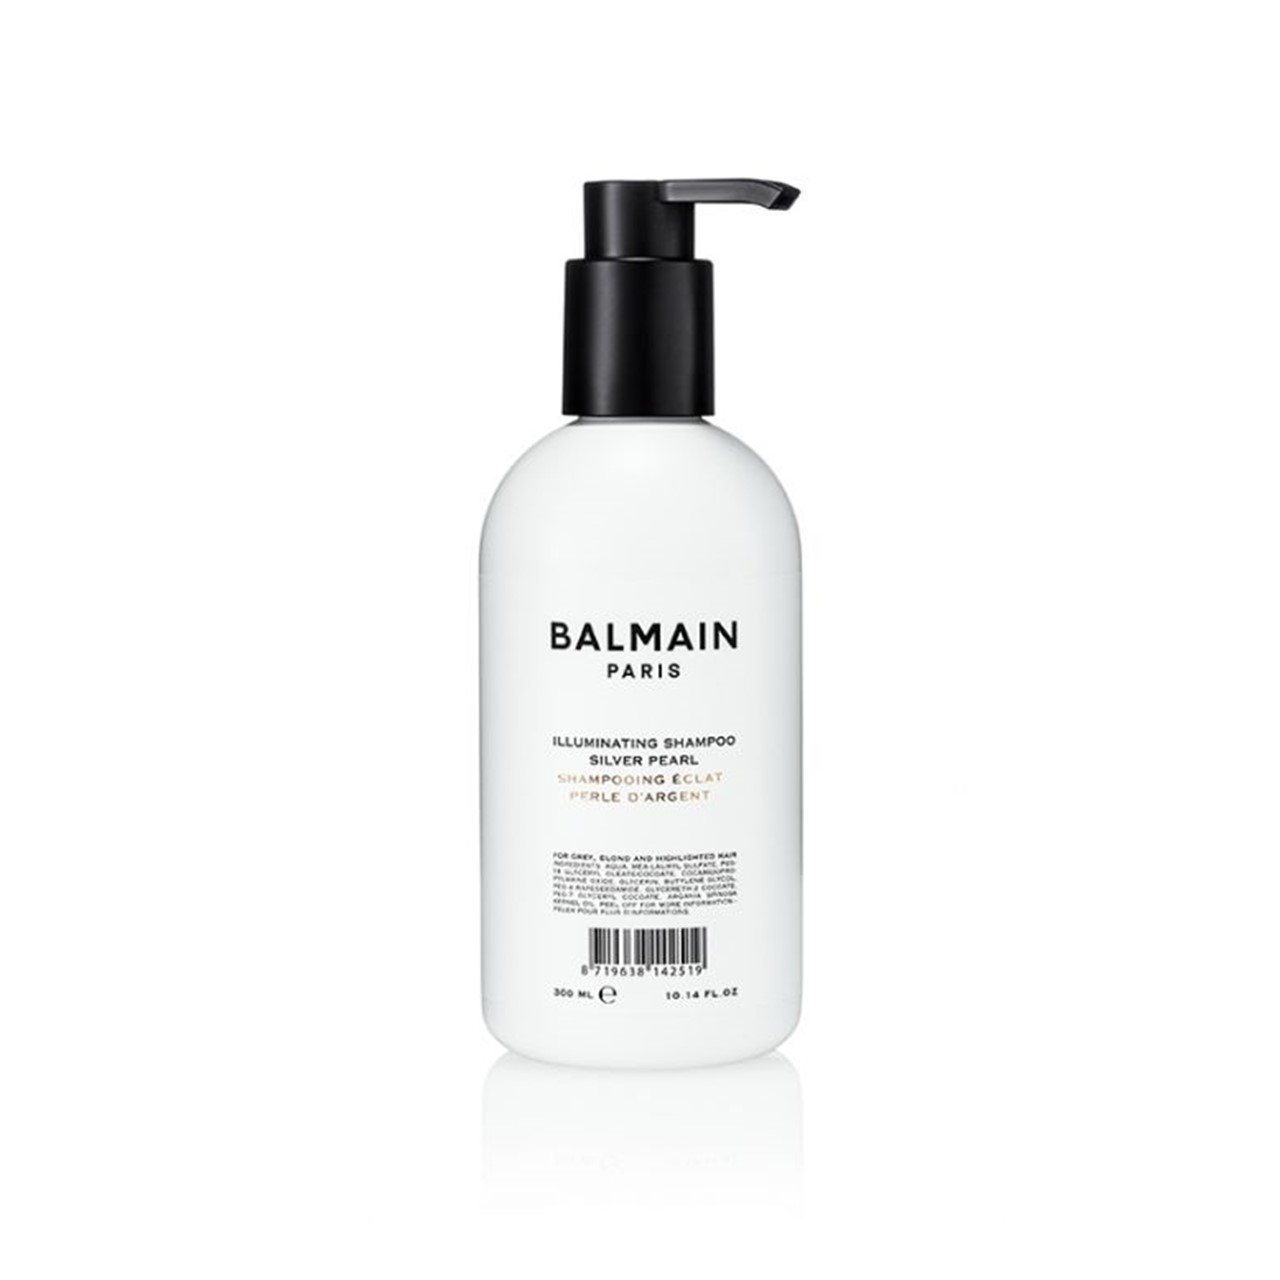 Balmain Hair Illuminating Shampoo Silver Pearl 300ml (10.14 fl oz)